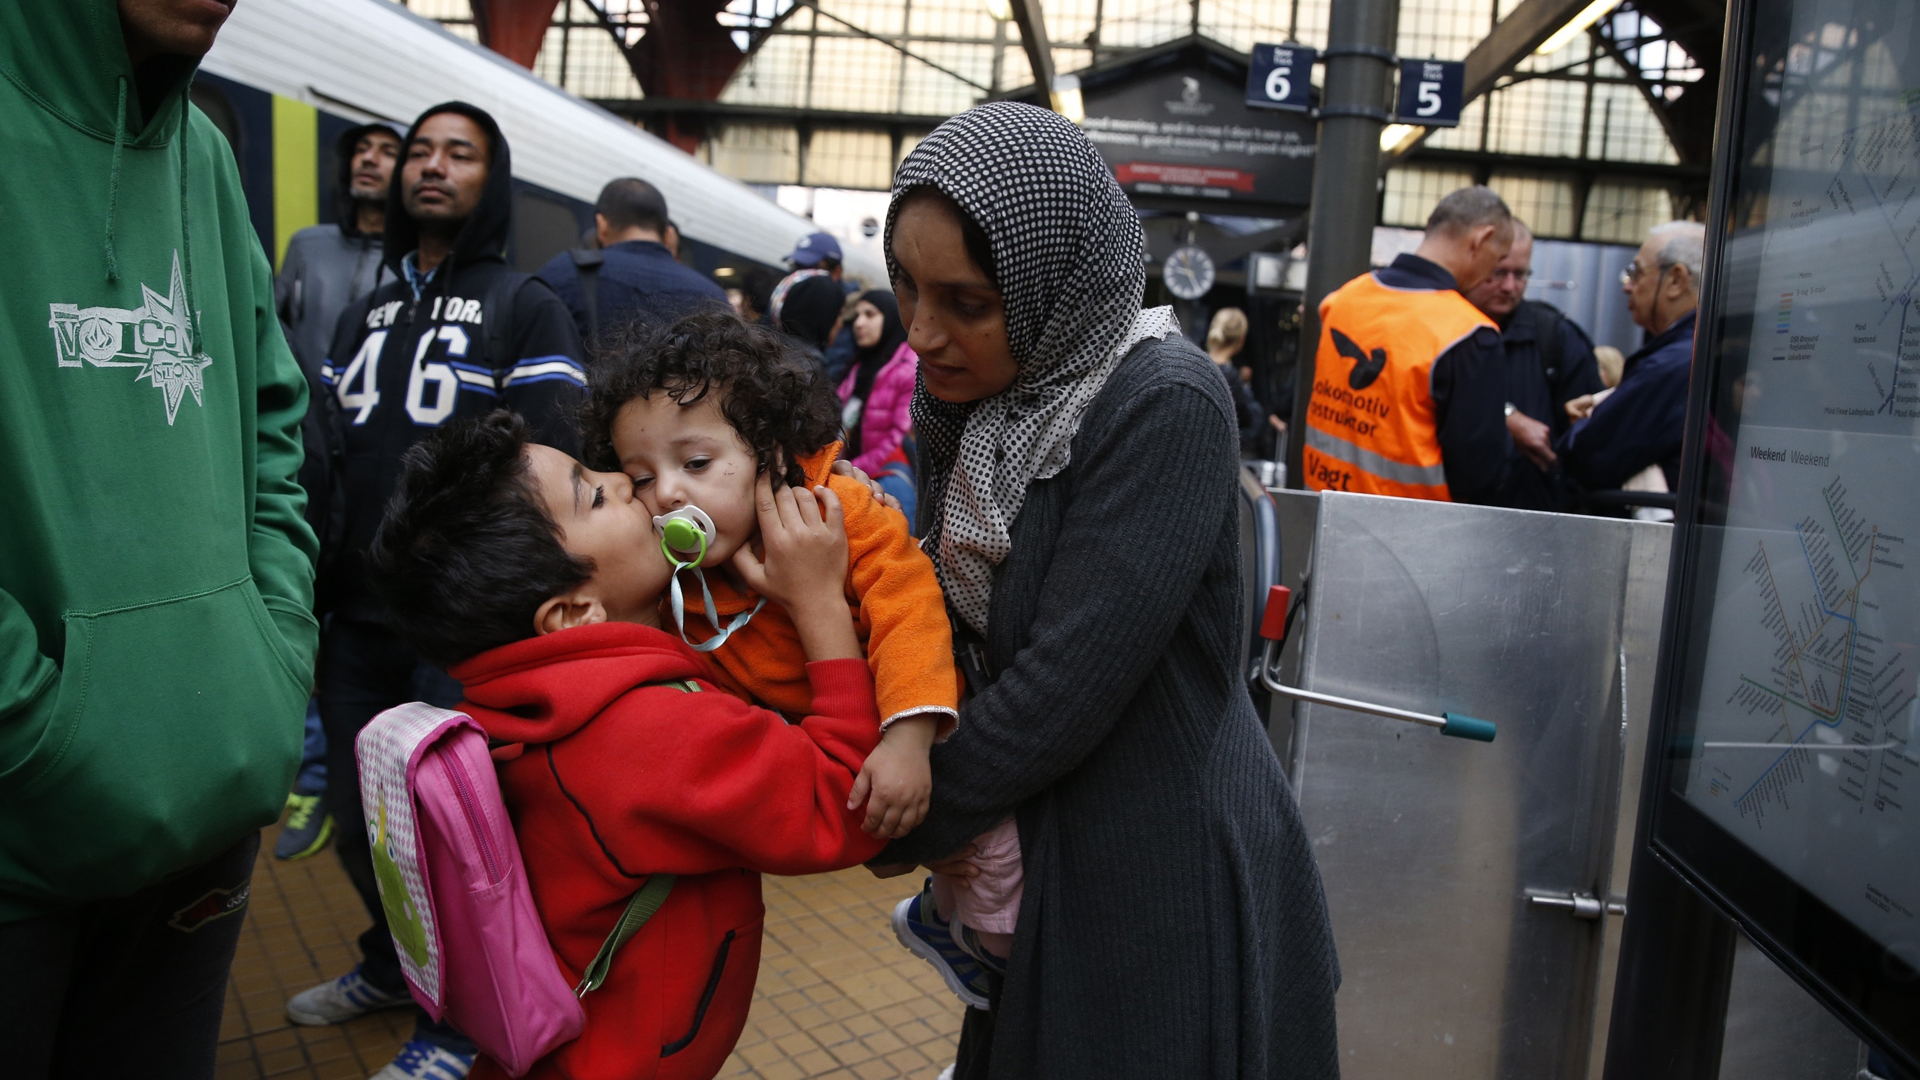 Eine syrische Familie am Bahnhof Kopenhagen (Archivbild von 2015). | picture alliance / AP Photo